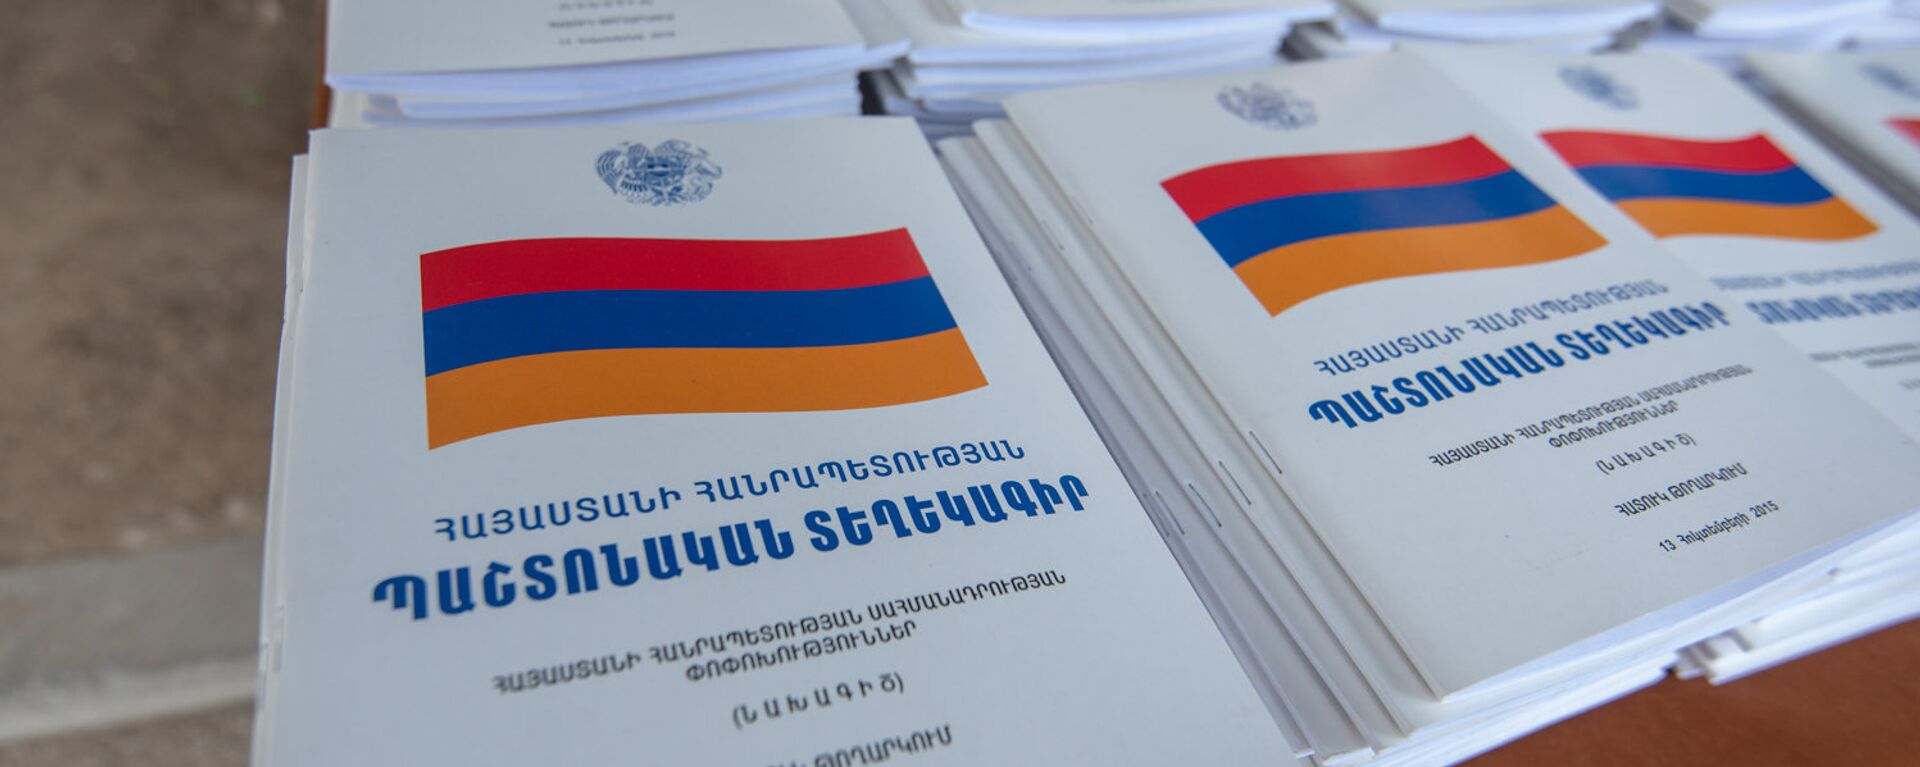 Брошюры проекта изменений Конституции Республики Армения - Sputnik Армения, 1920, 27.12.2021